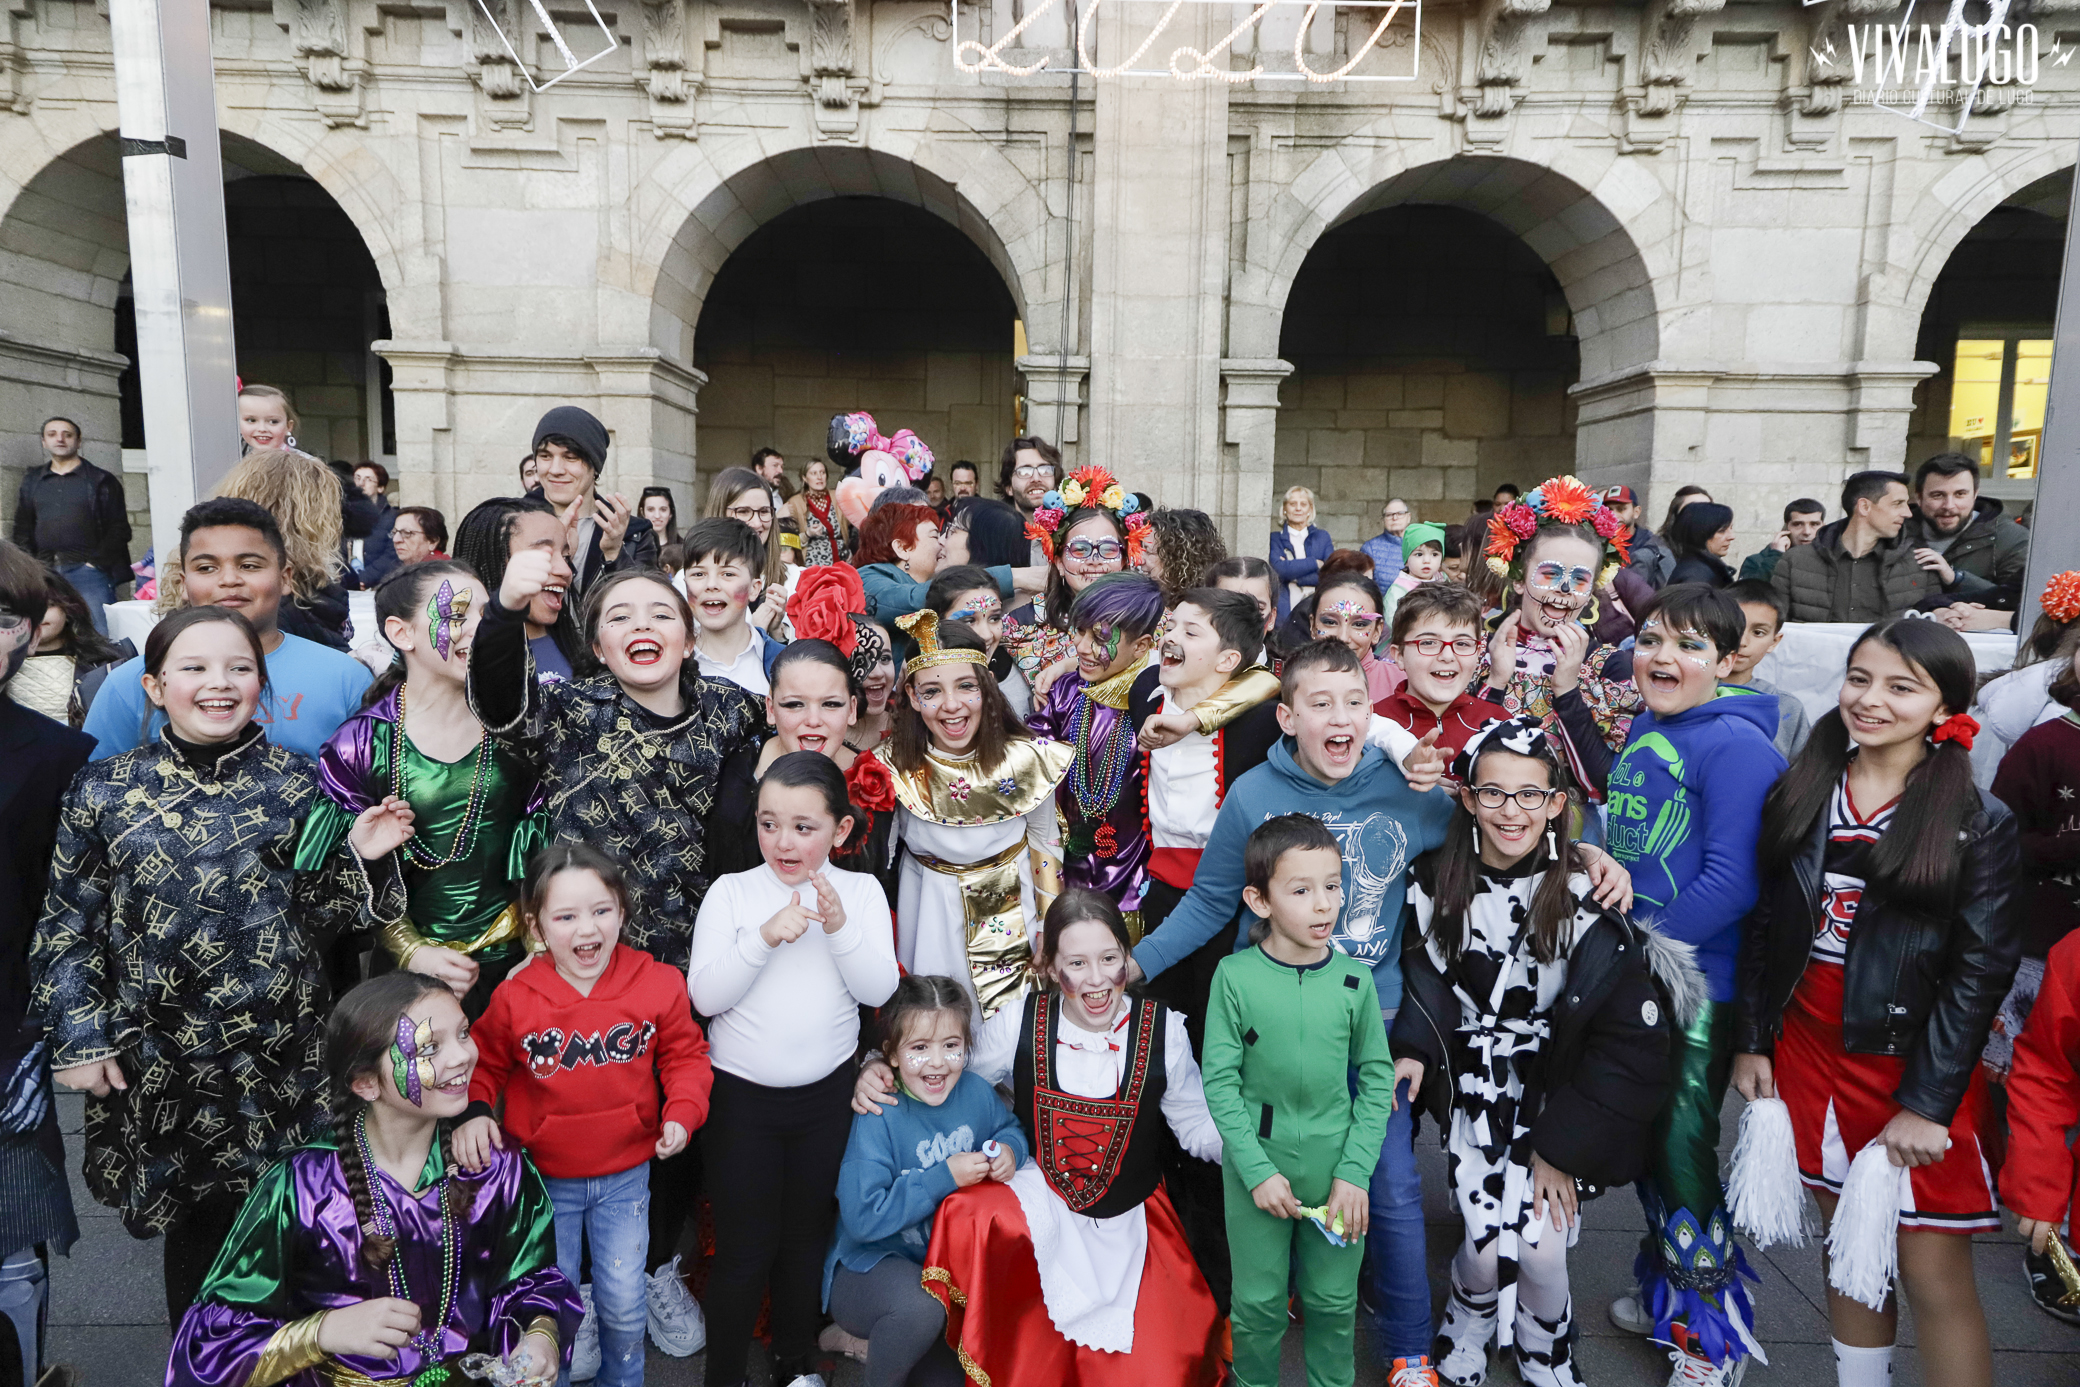 Lugo - Gañadores do concurso de disfraces infantil do entroido 2020